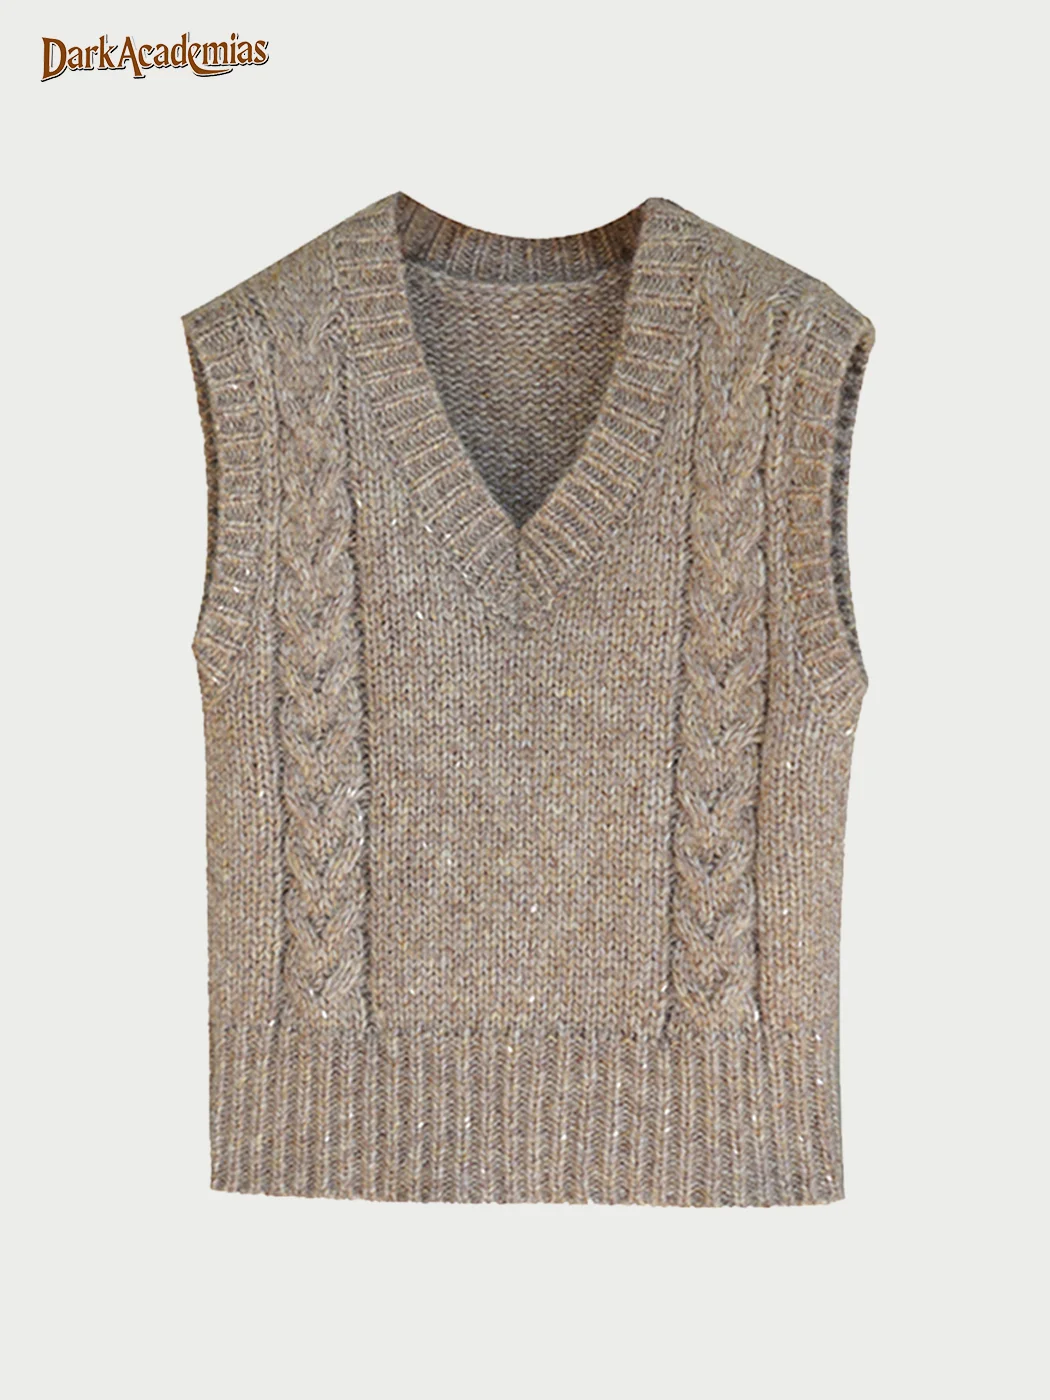 French Knitted Woolen Vest / DarkAcademias /Darkacademias